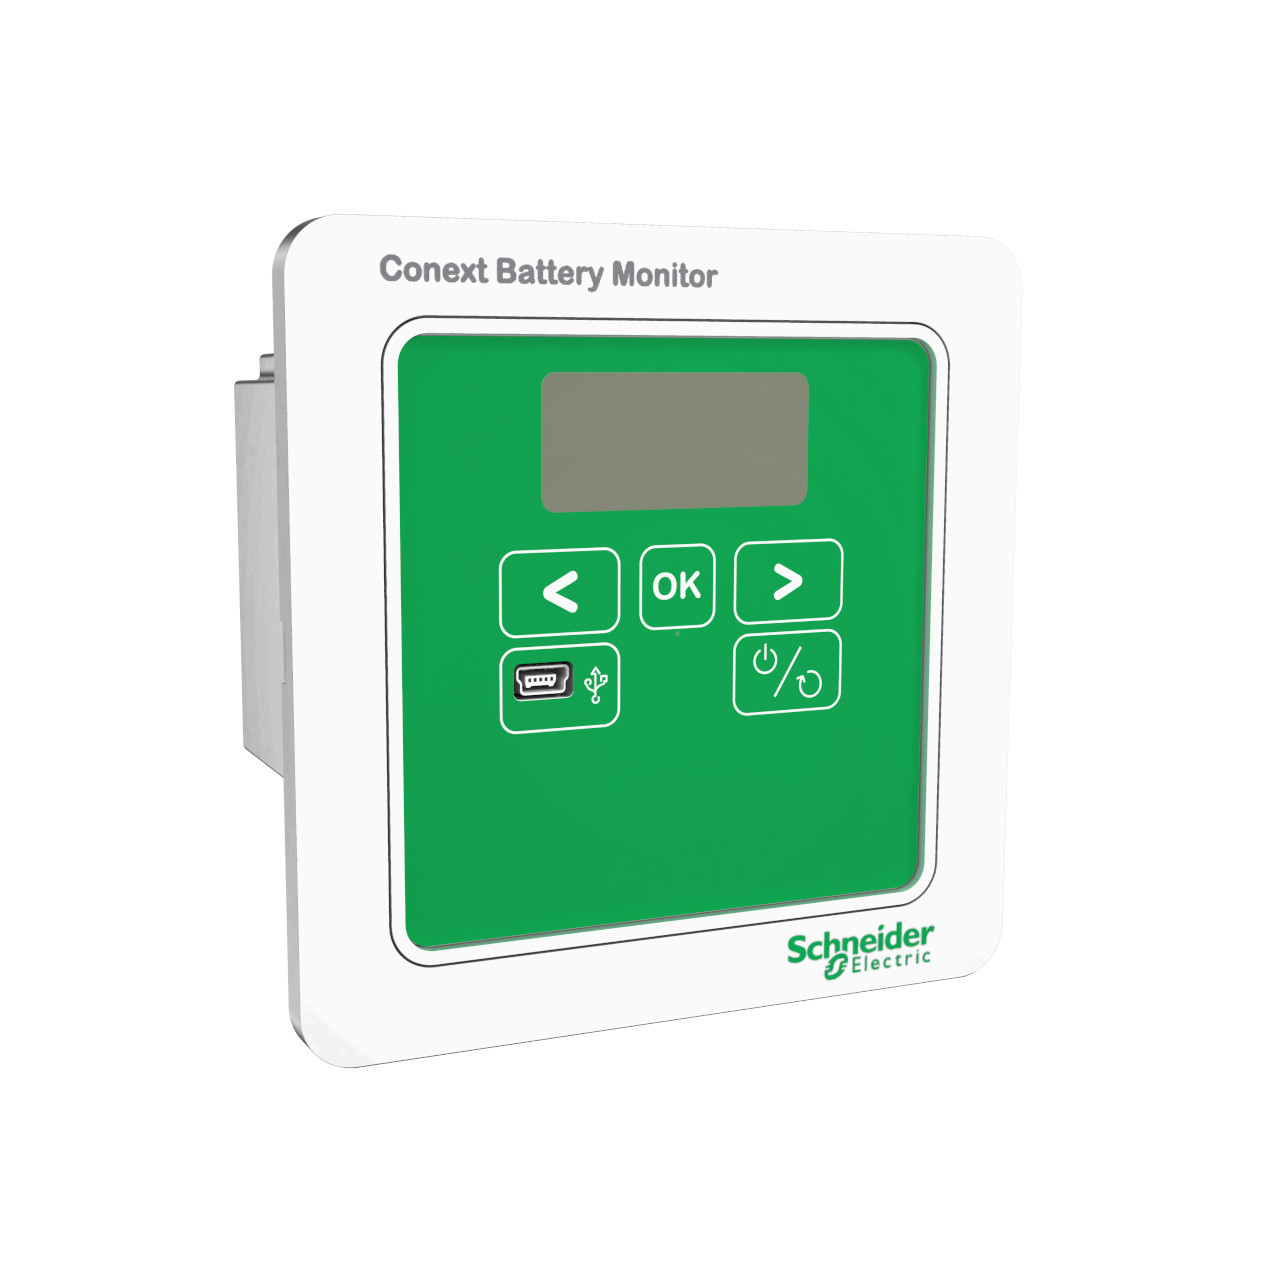 Schneider - Conext Battery Monitor